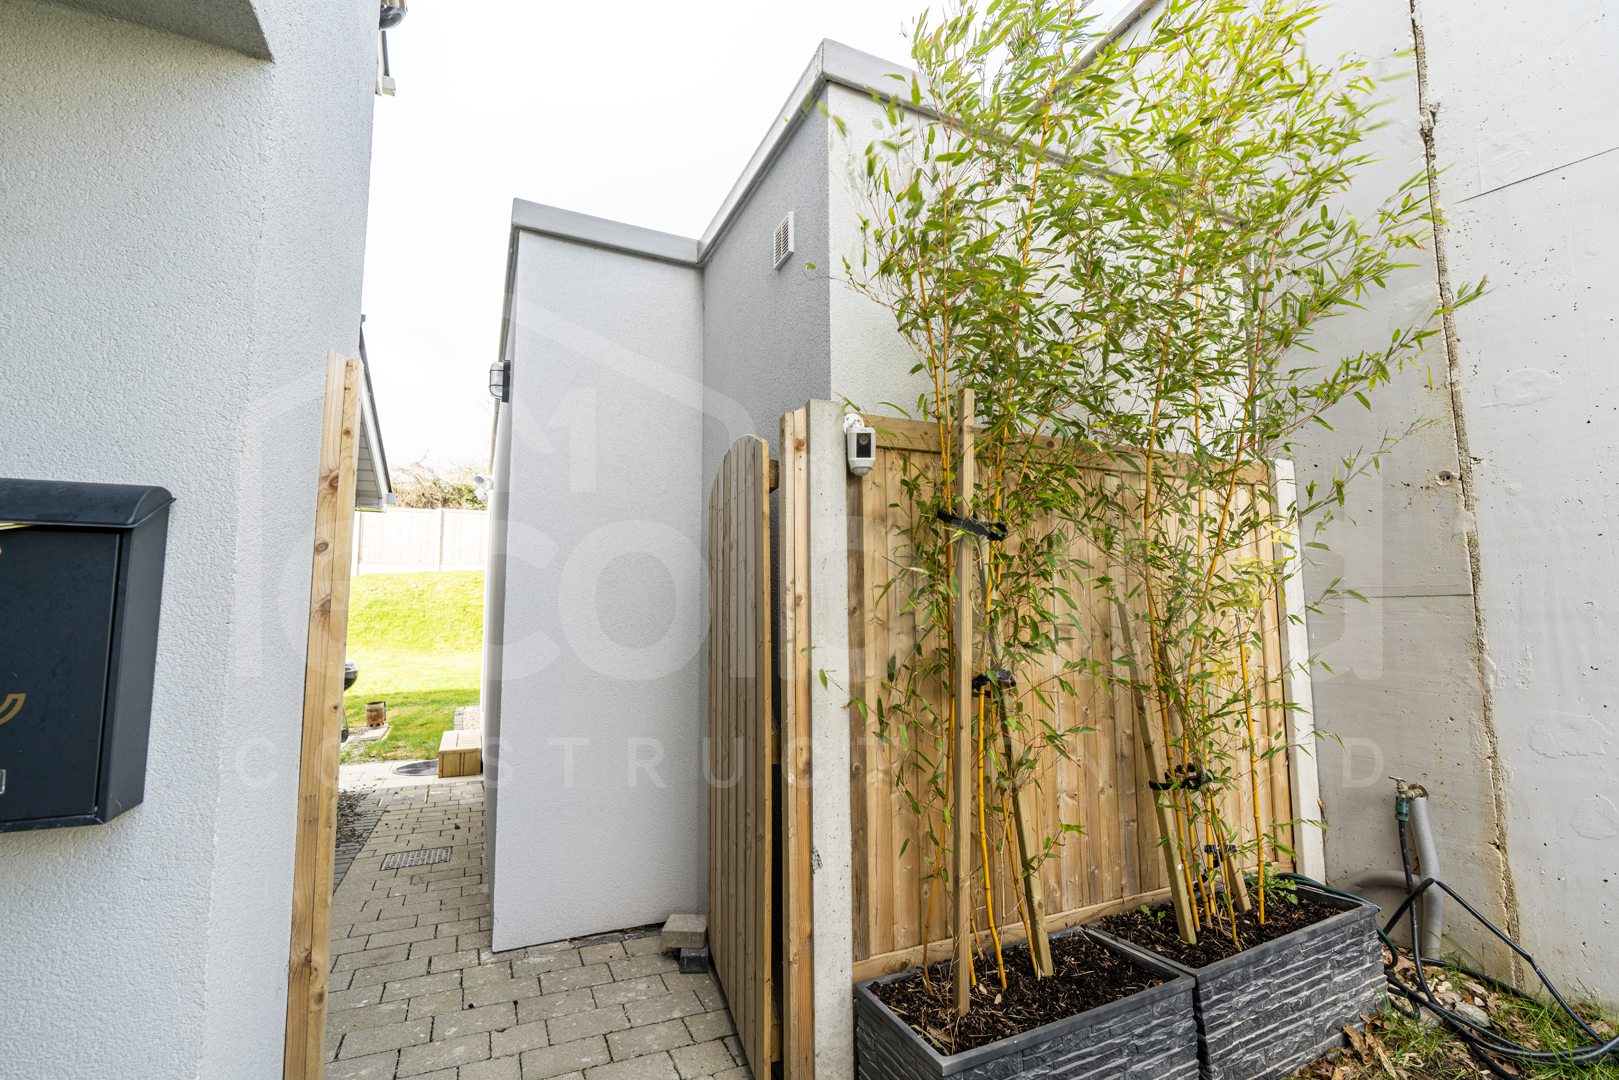 8.8m x 2.6m Office Garden Studio – Wicklow